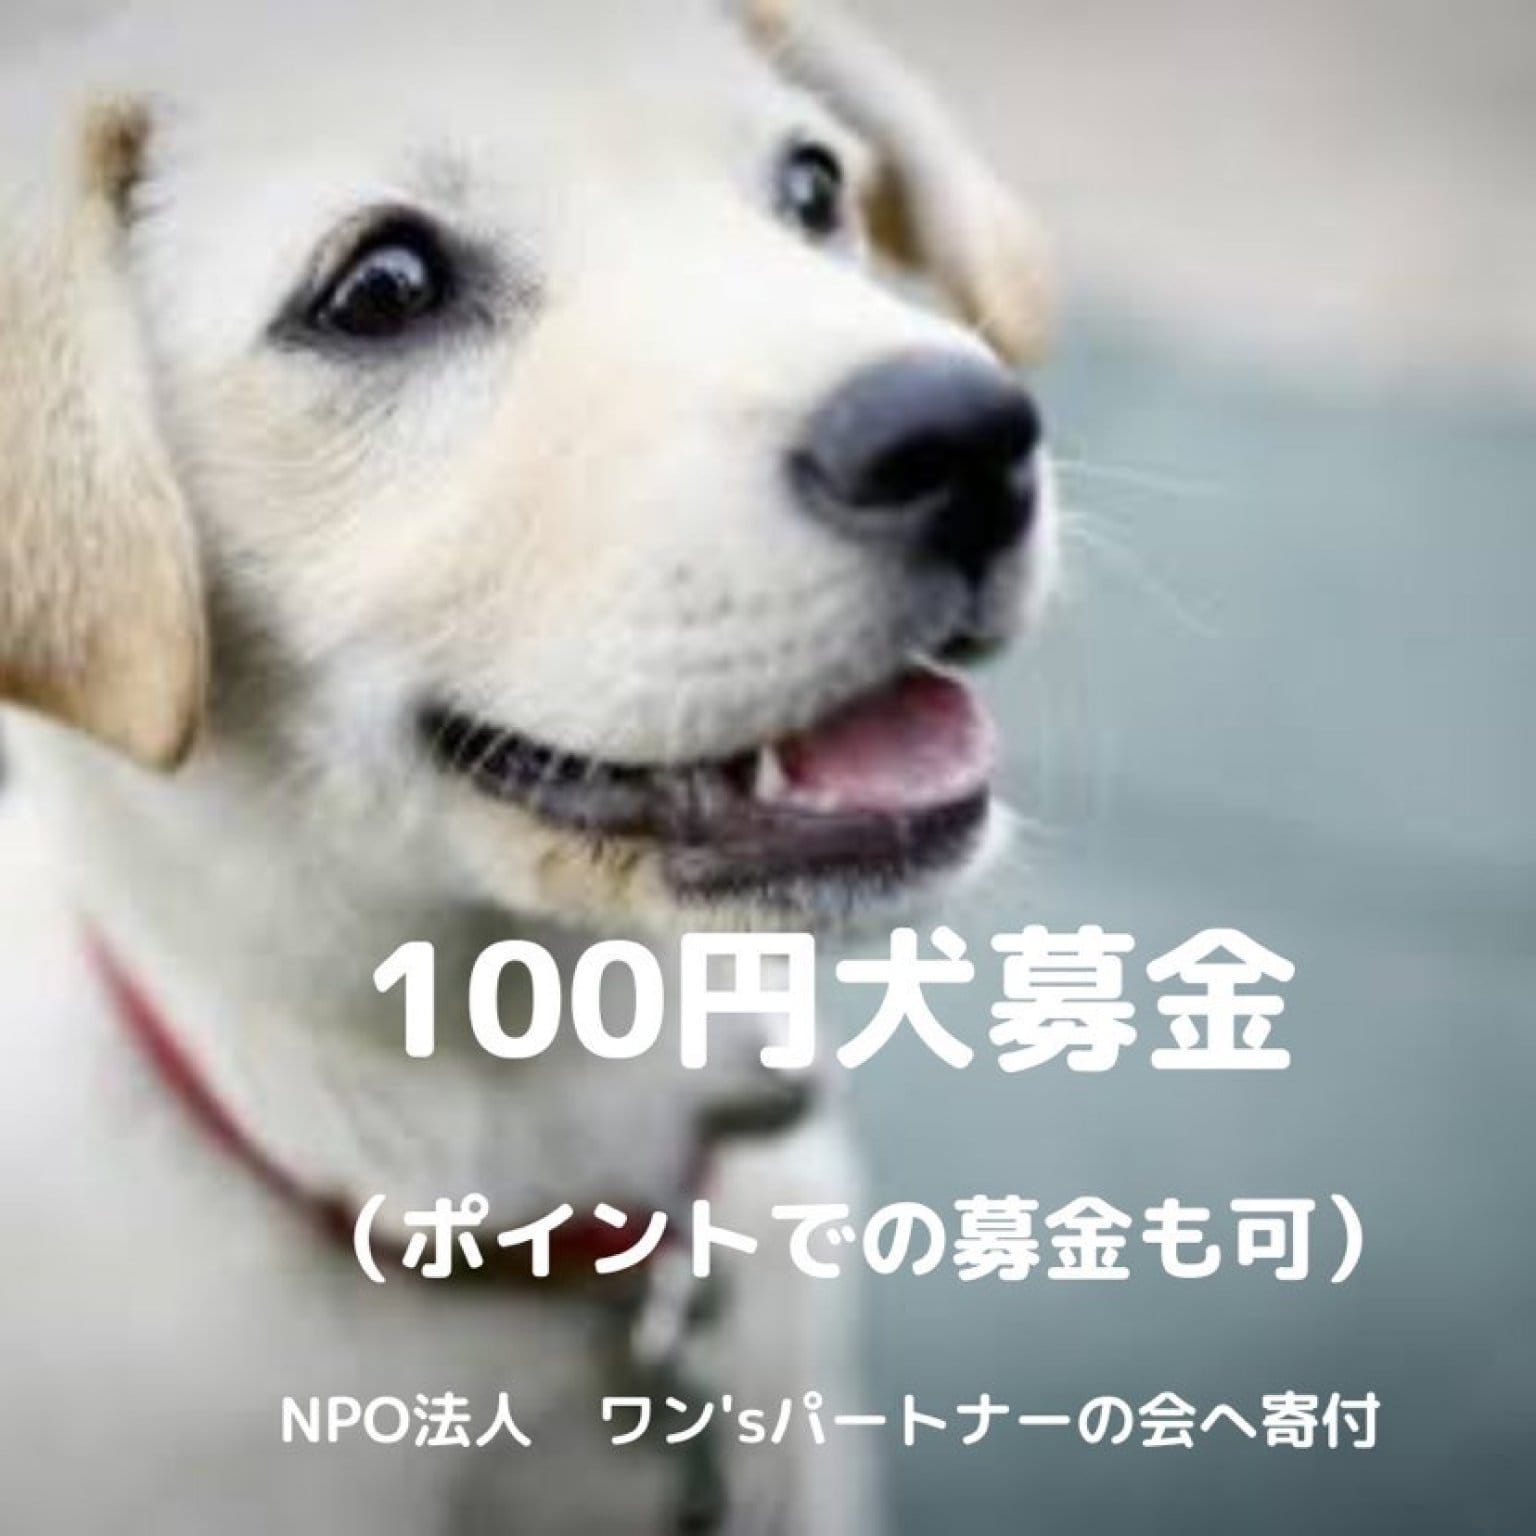 【ポイントでの募金も可能です】100円犬募金　《『NPO法人 ワン'sパートナーの会』さんへの募金です》